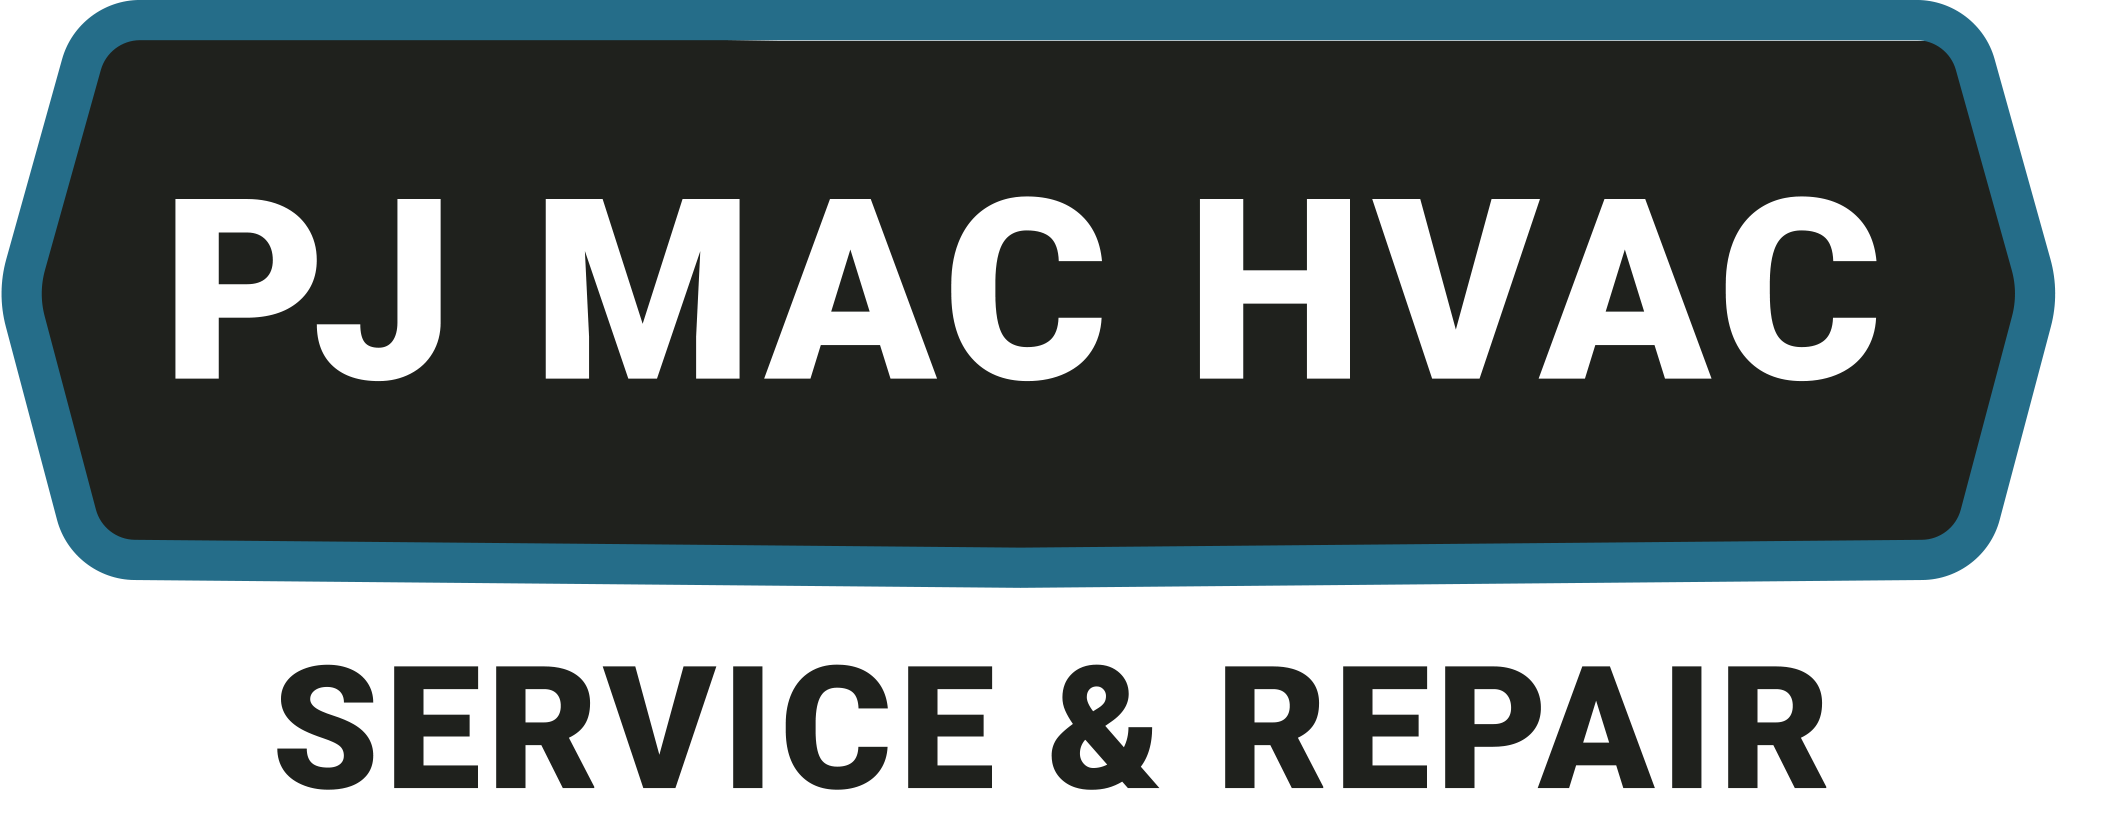 PJ Mac HVAC Service & Repair Logo